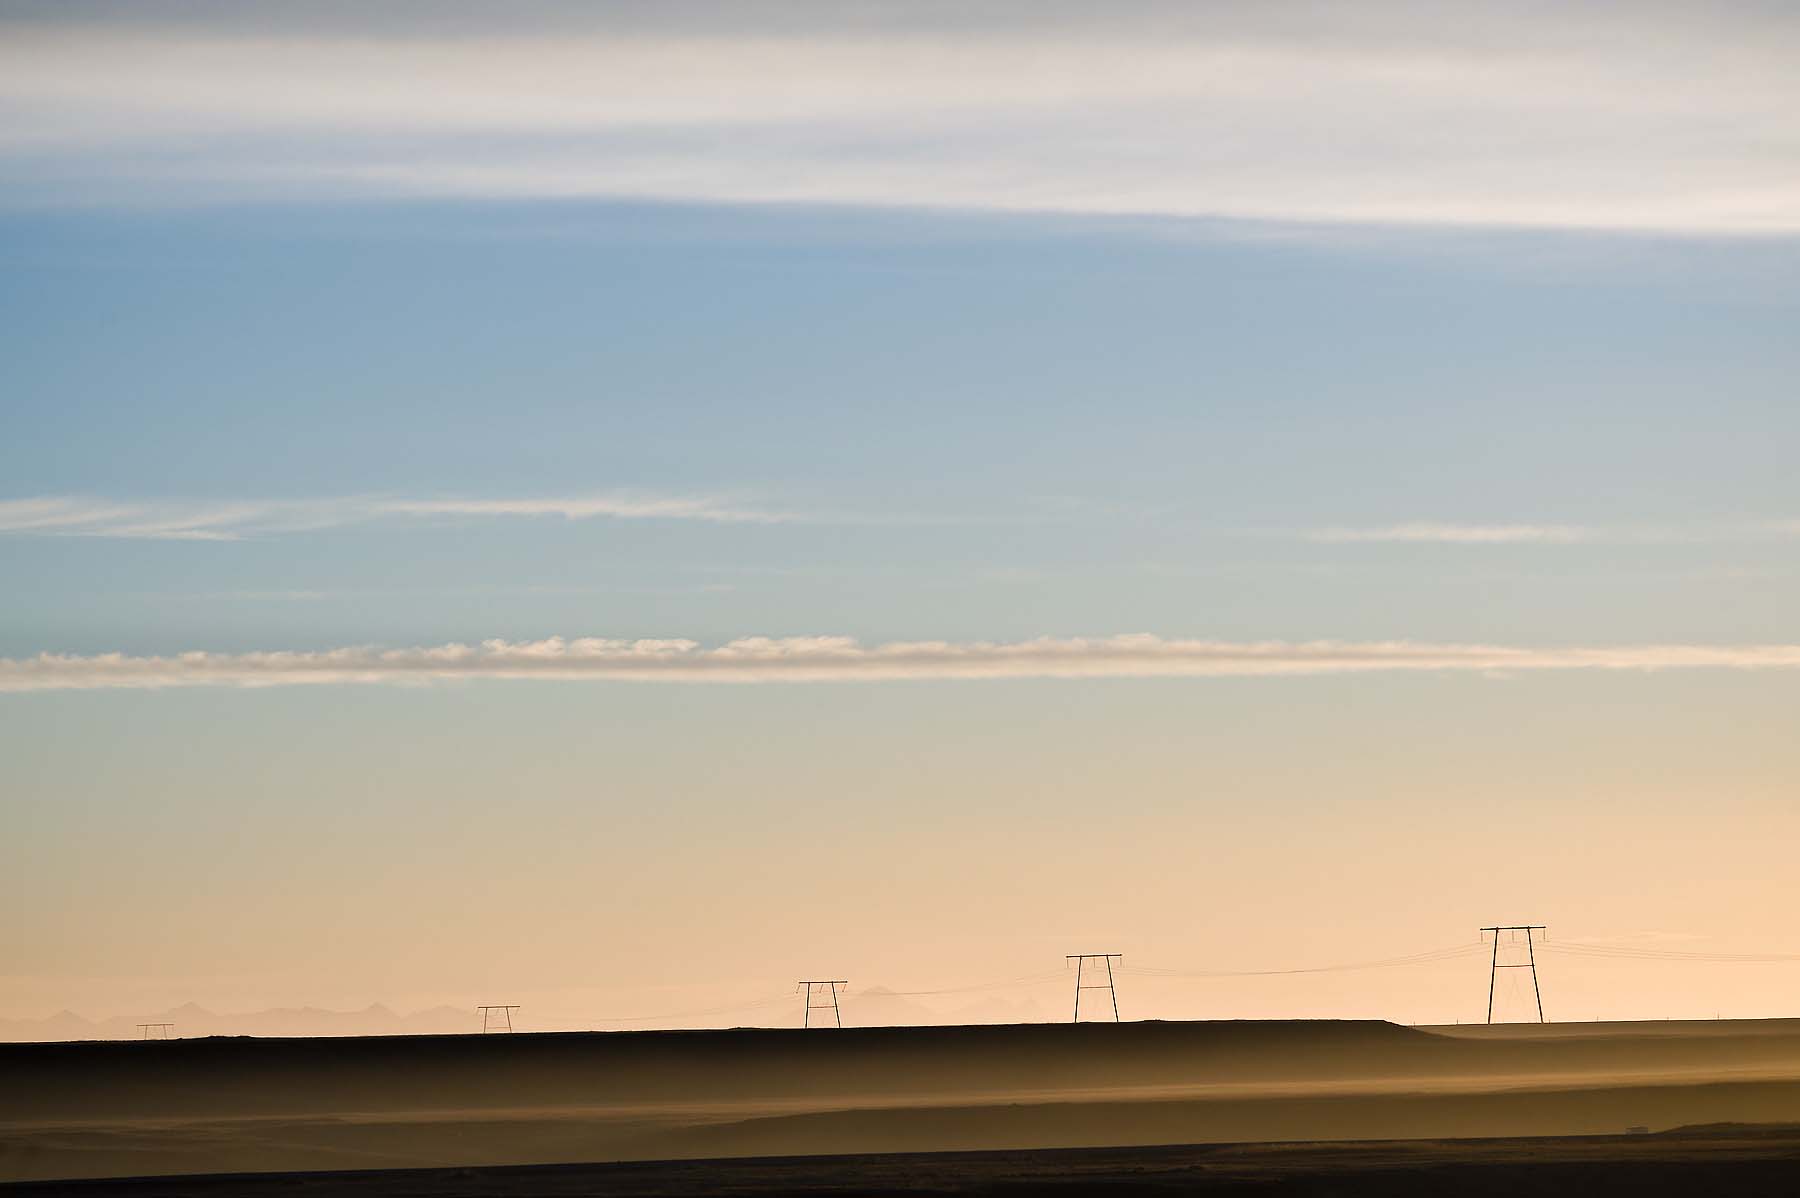 Pylons-minimalism-Iceland-Empty-Landscape